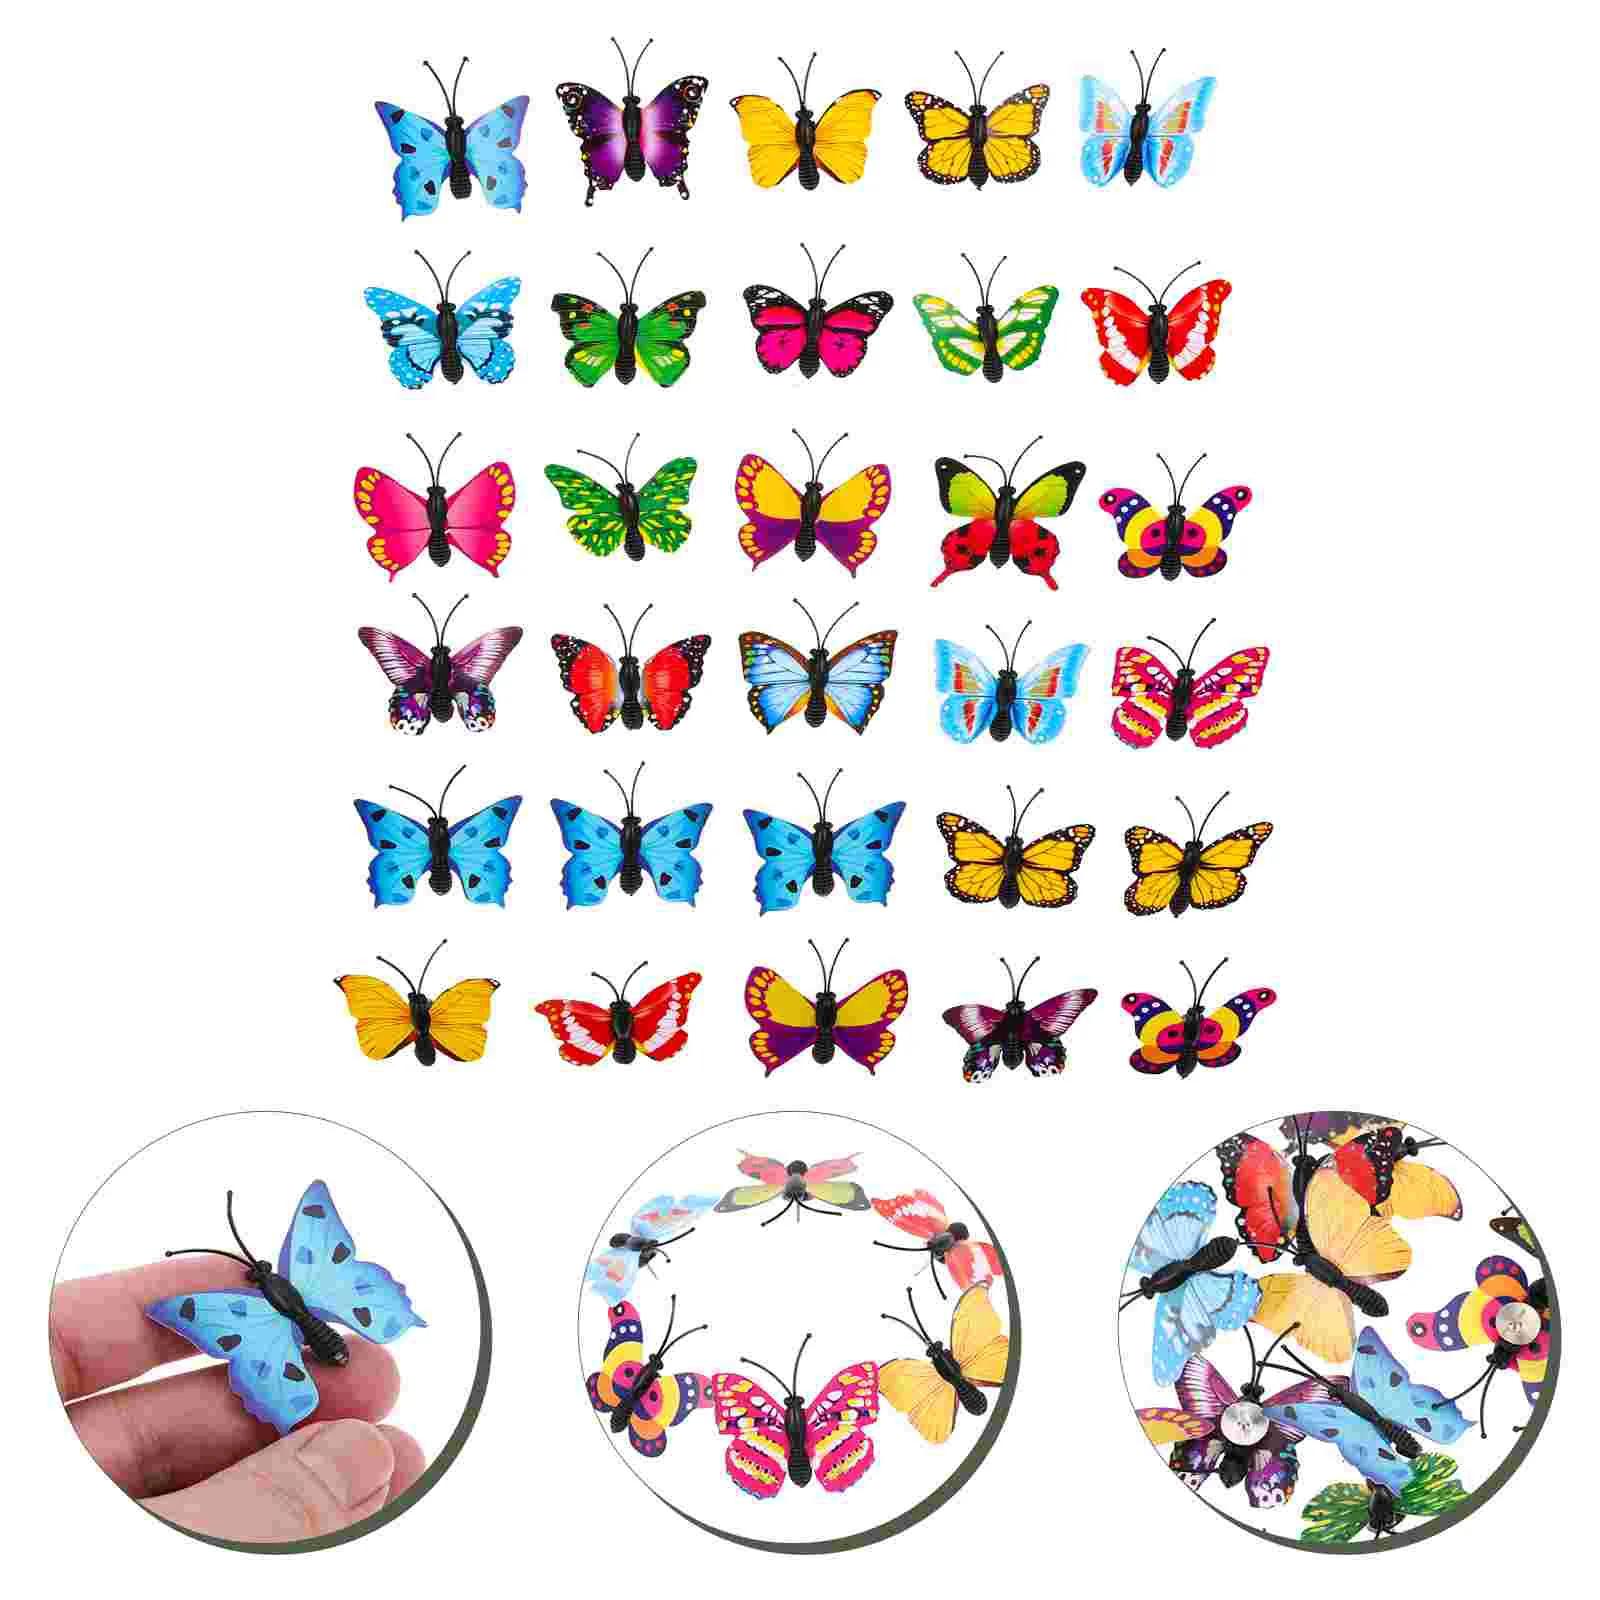 나비 푸쉬핀 장식 엄지 압정, 사무실 사진 벽, 다채로운 나비 게시판, 30 개